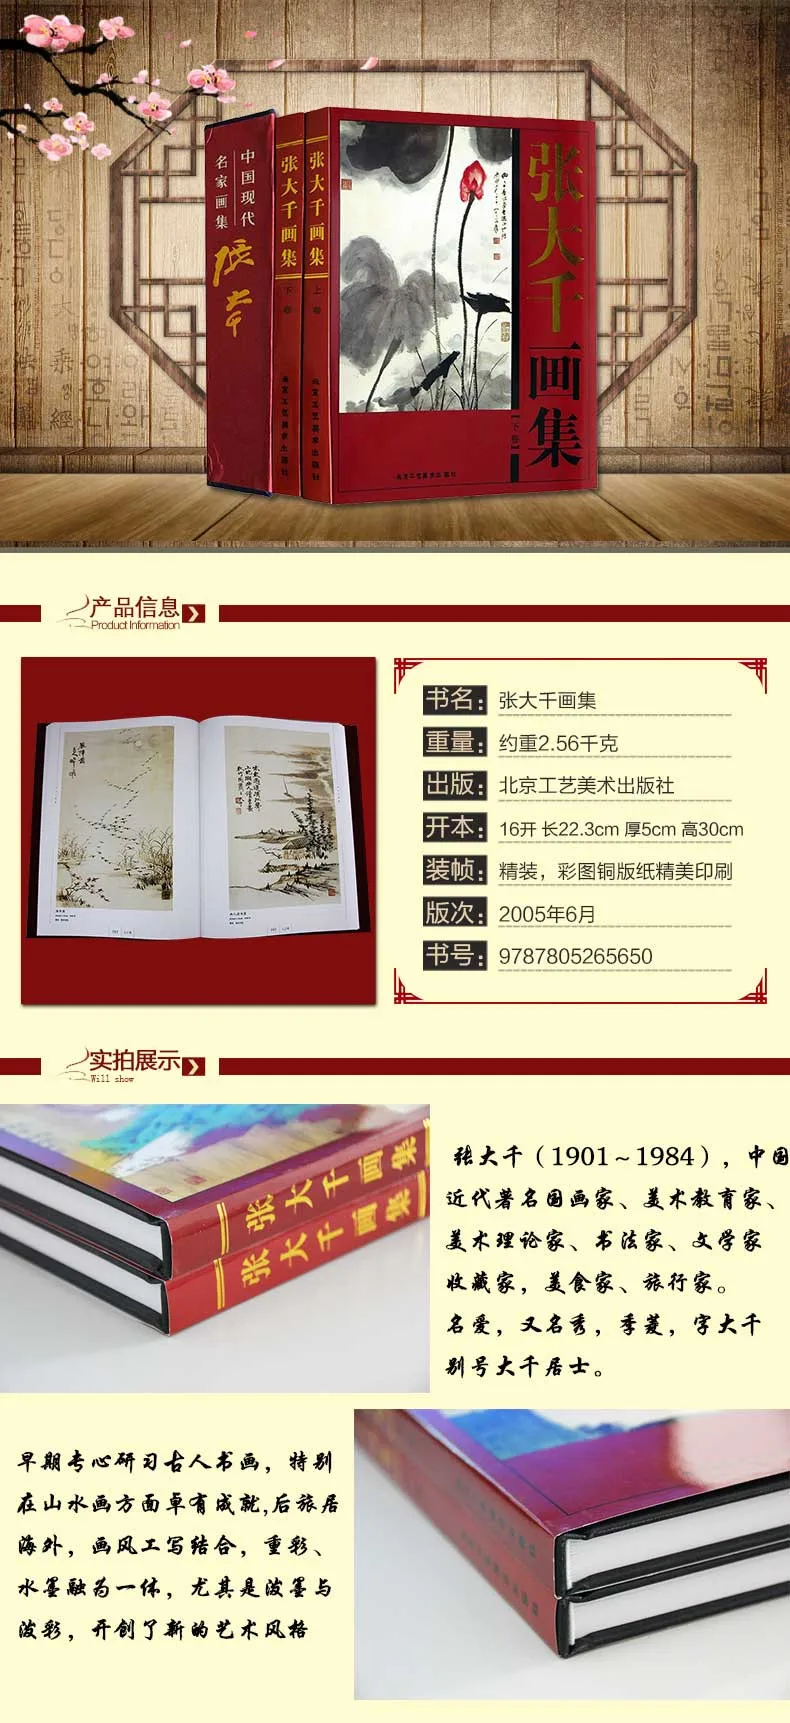 2 шт./компл. китайской живописи книга, написанная zhangdaqian китайский знаменитостей живопись книга